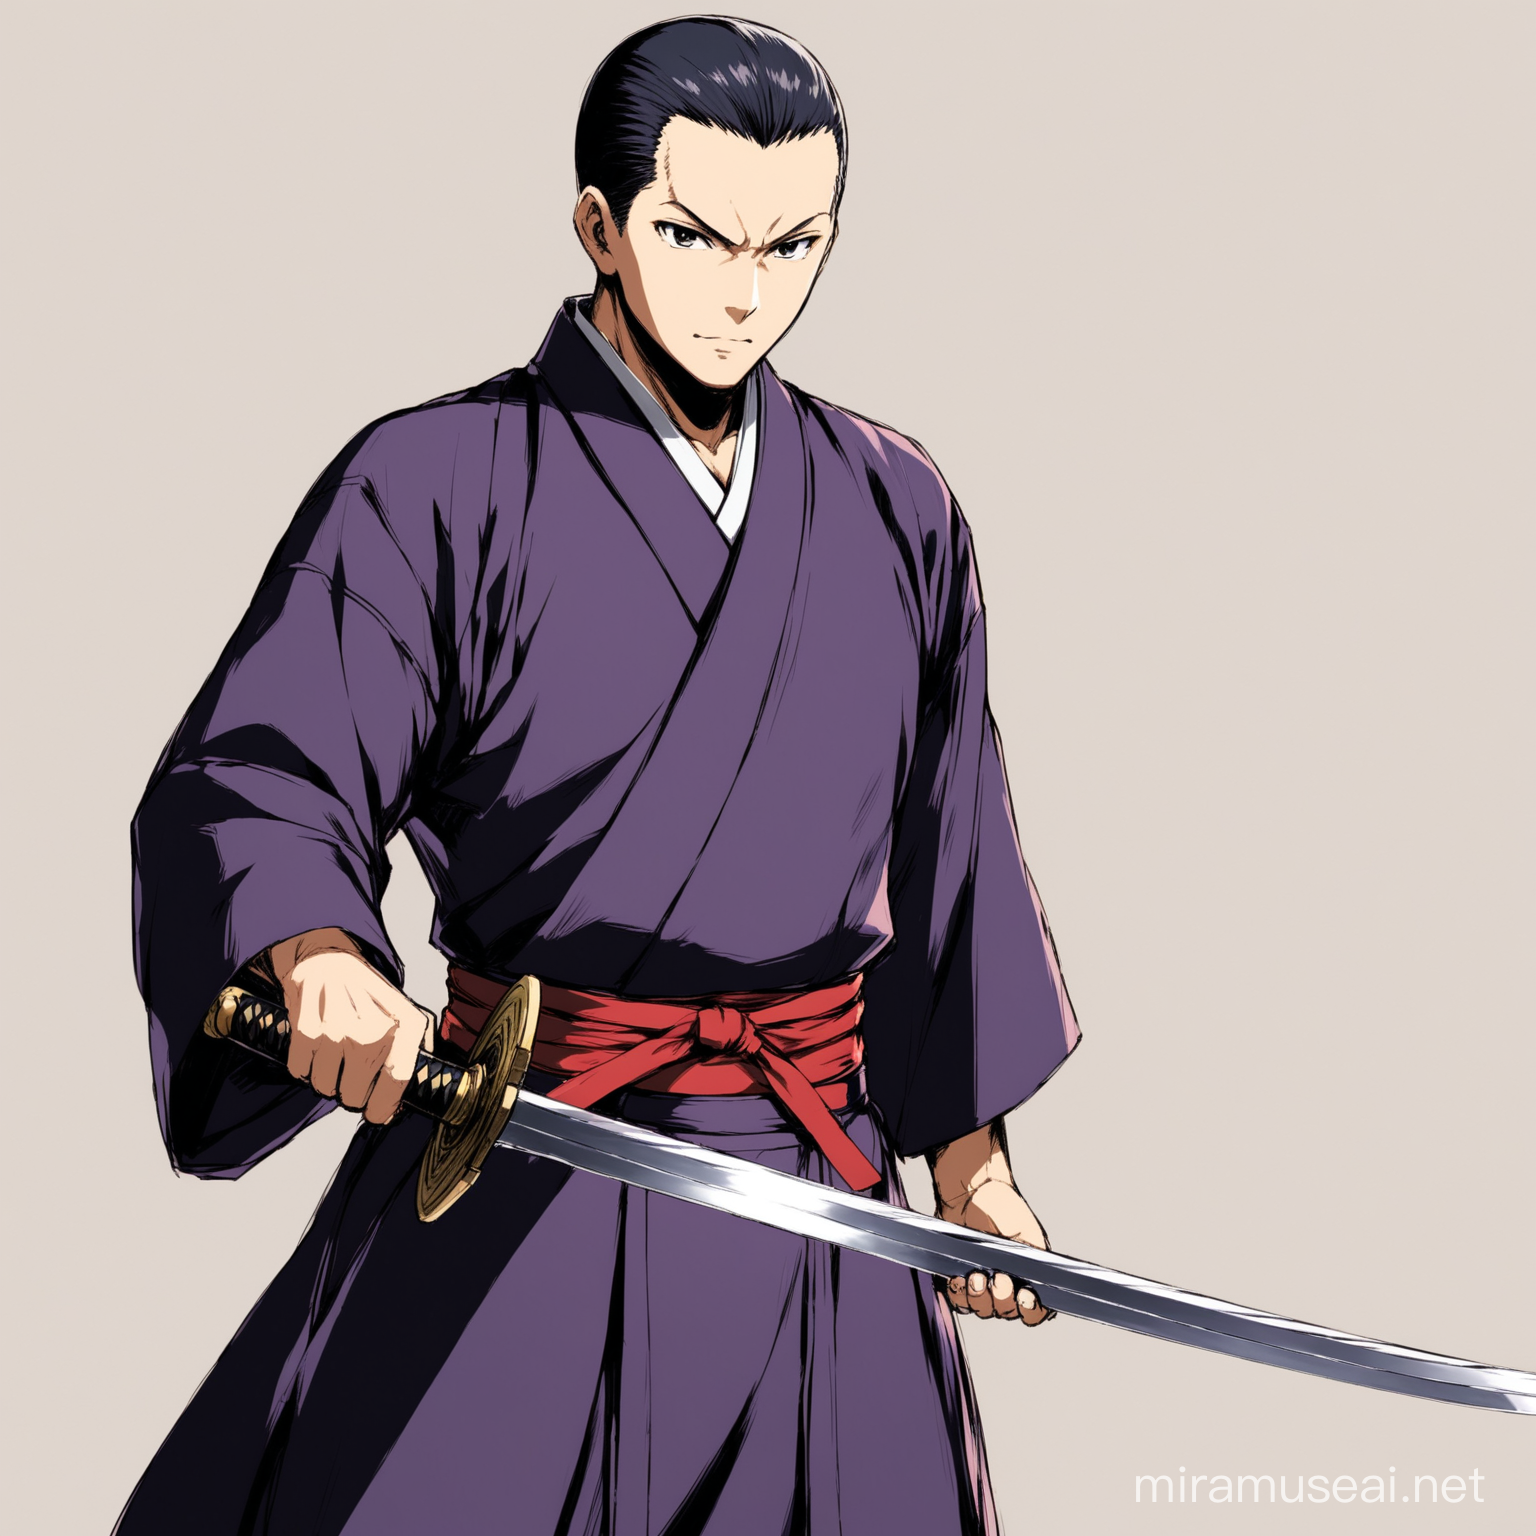 toji from jujustu kaisen holding a sword